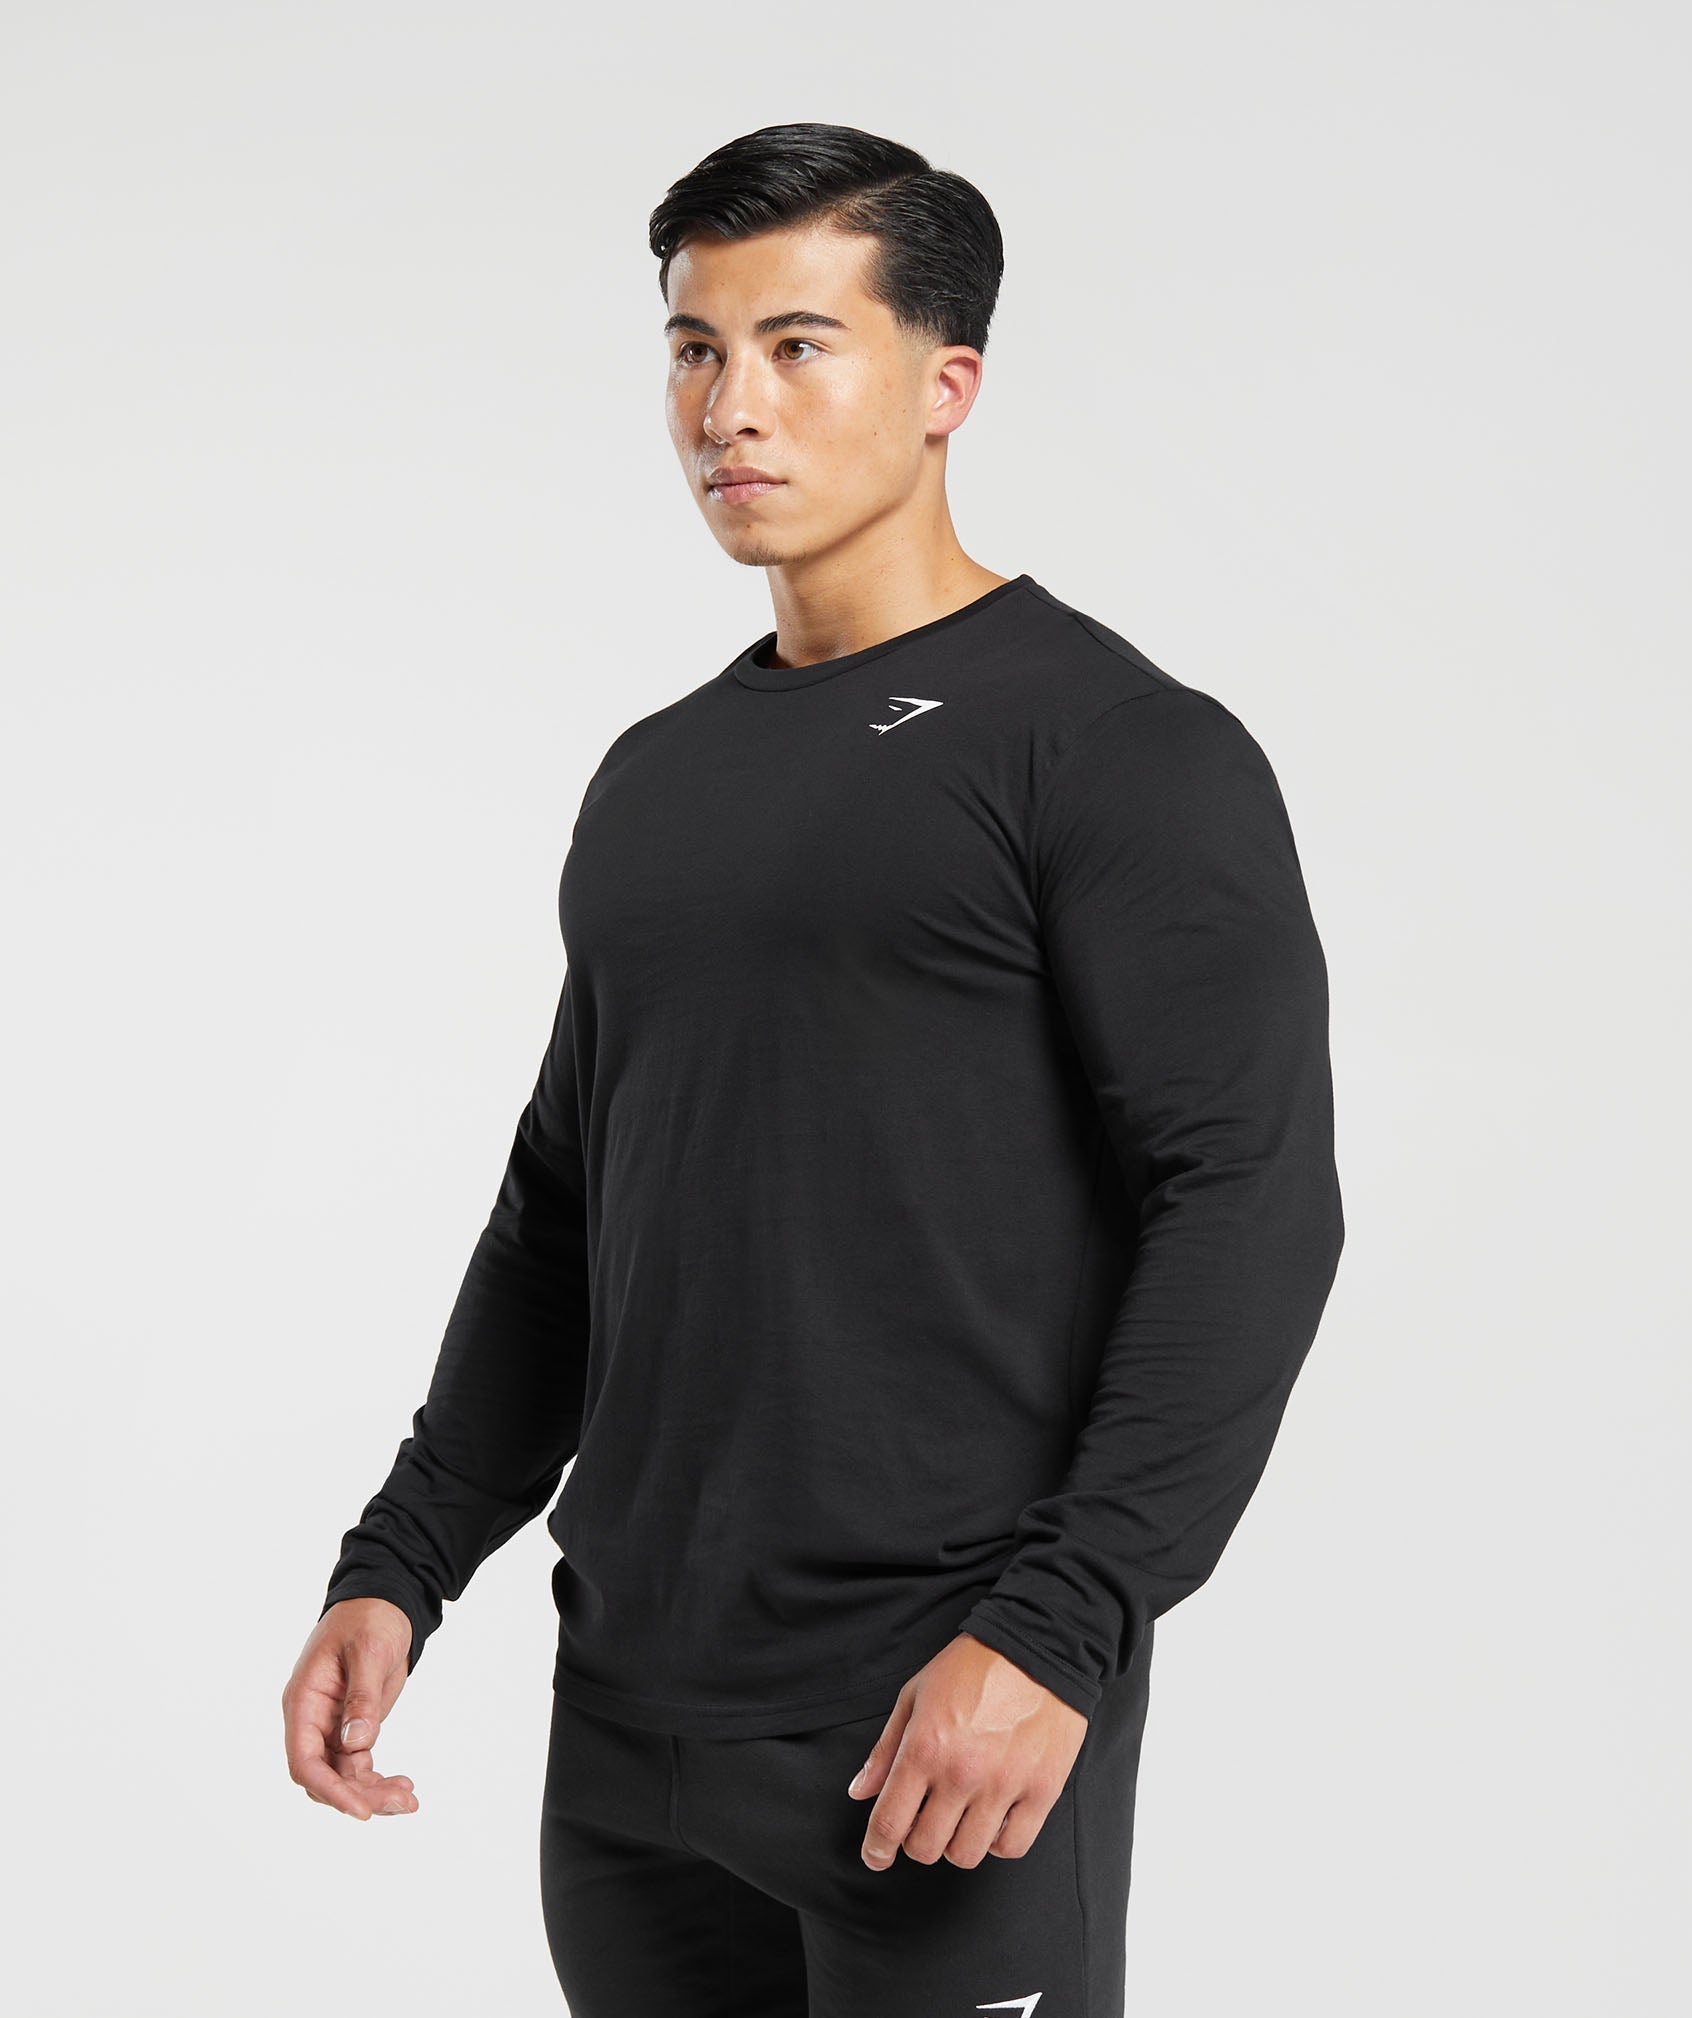 Gymshark Lifting Club Long Sleeve T-Shirt - Black